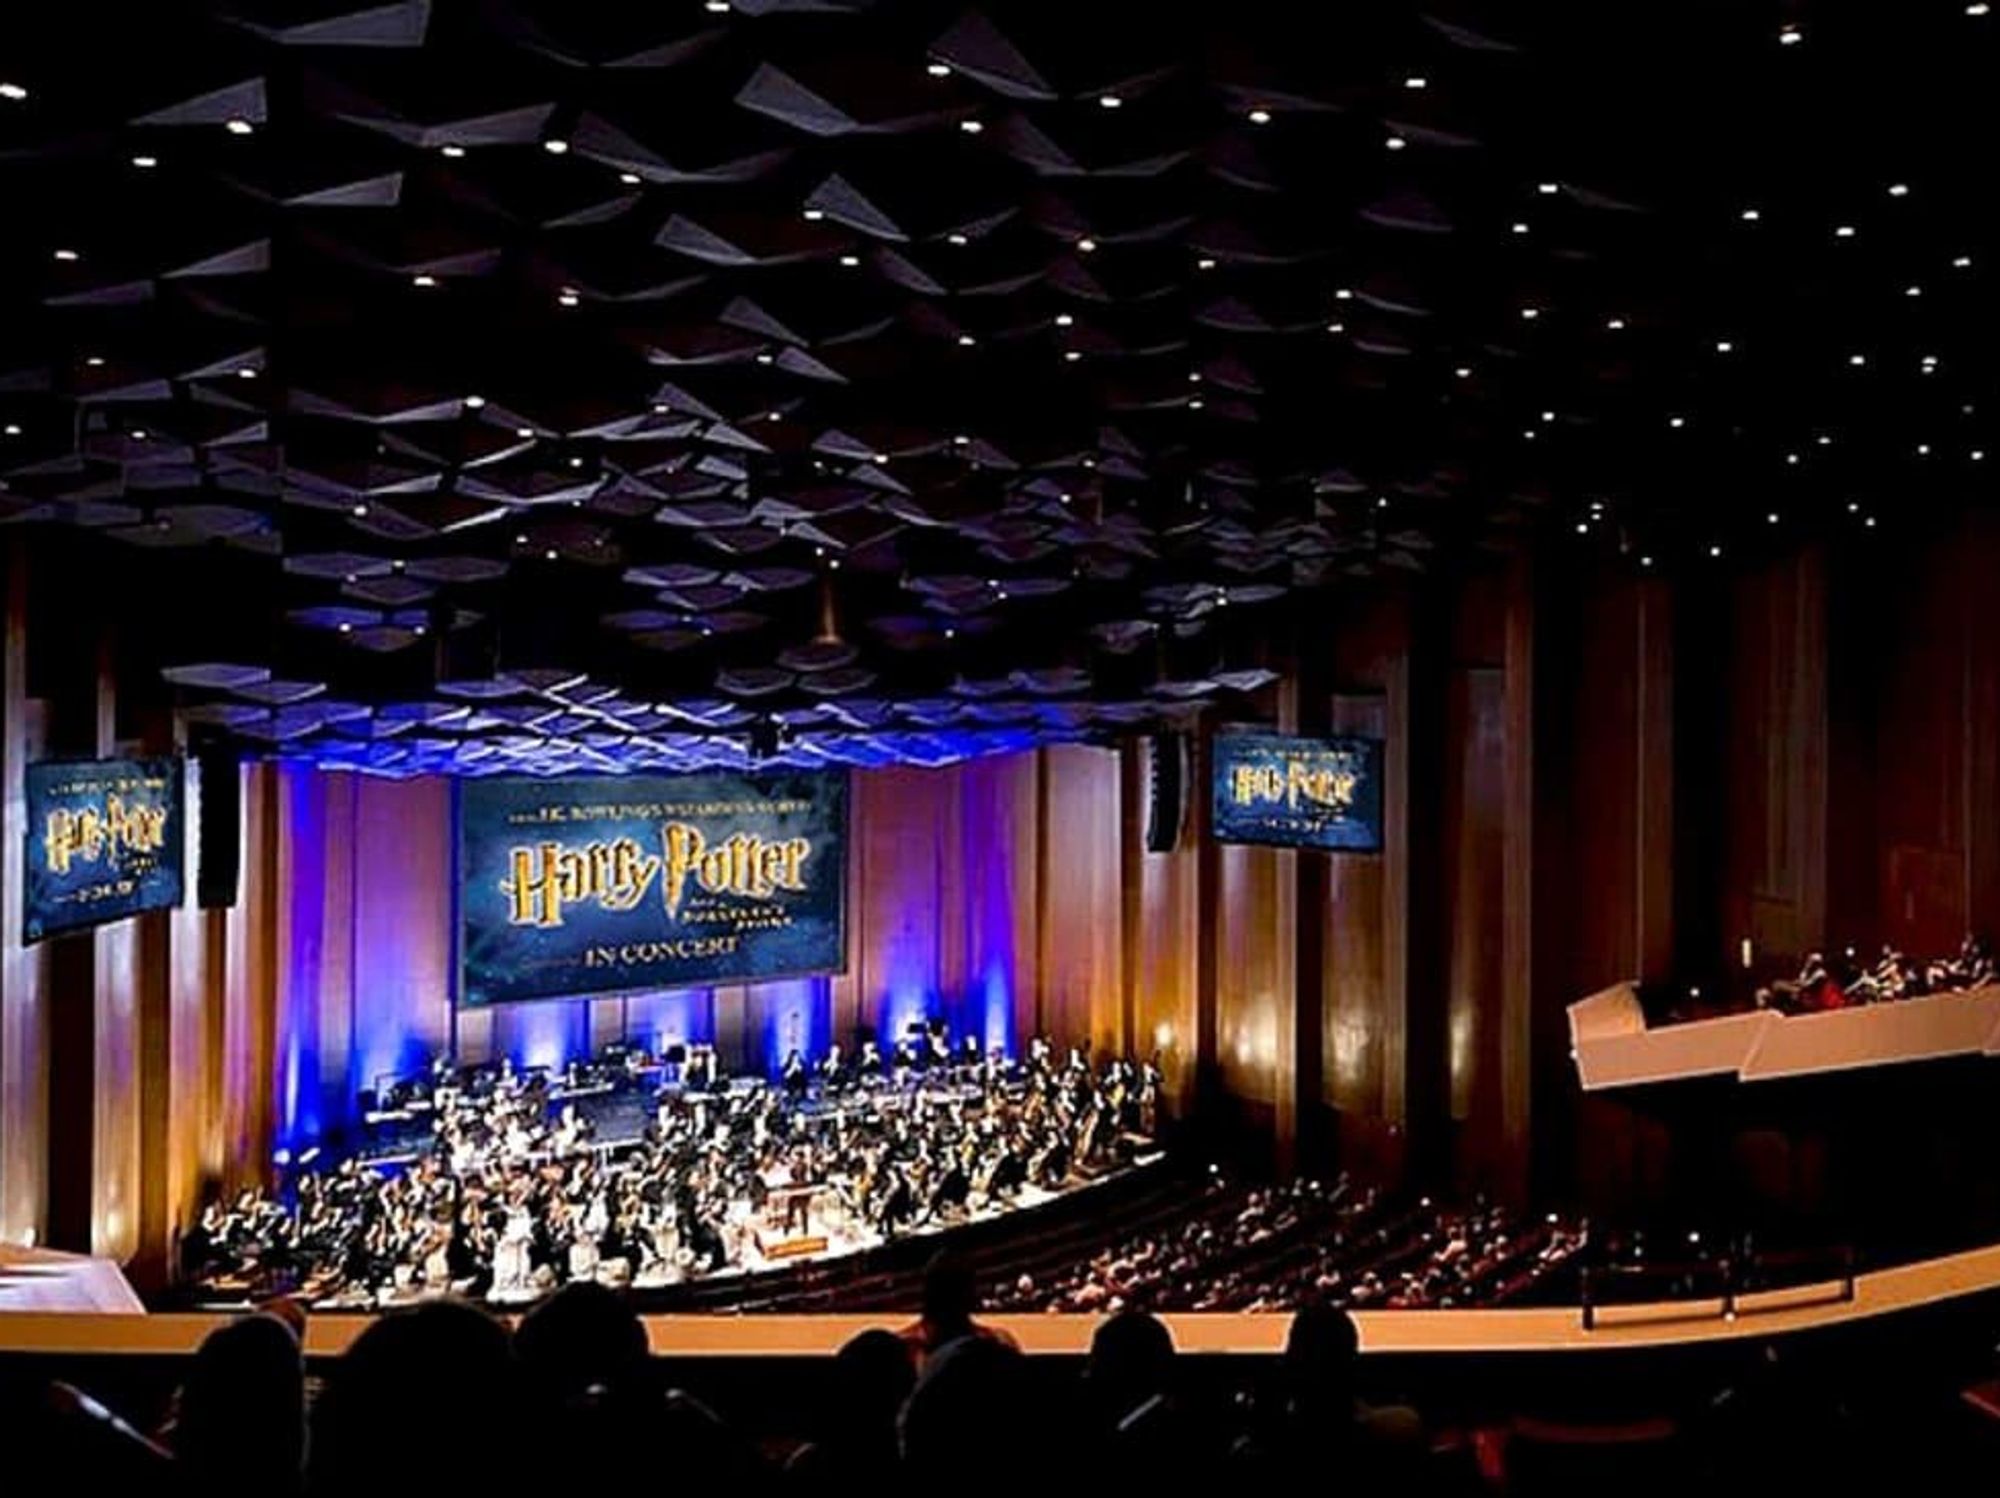 Houston Symphony Harry Potter